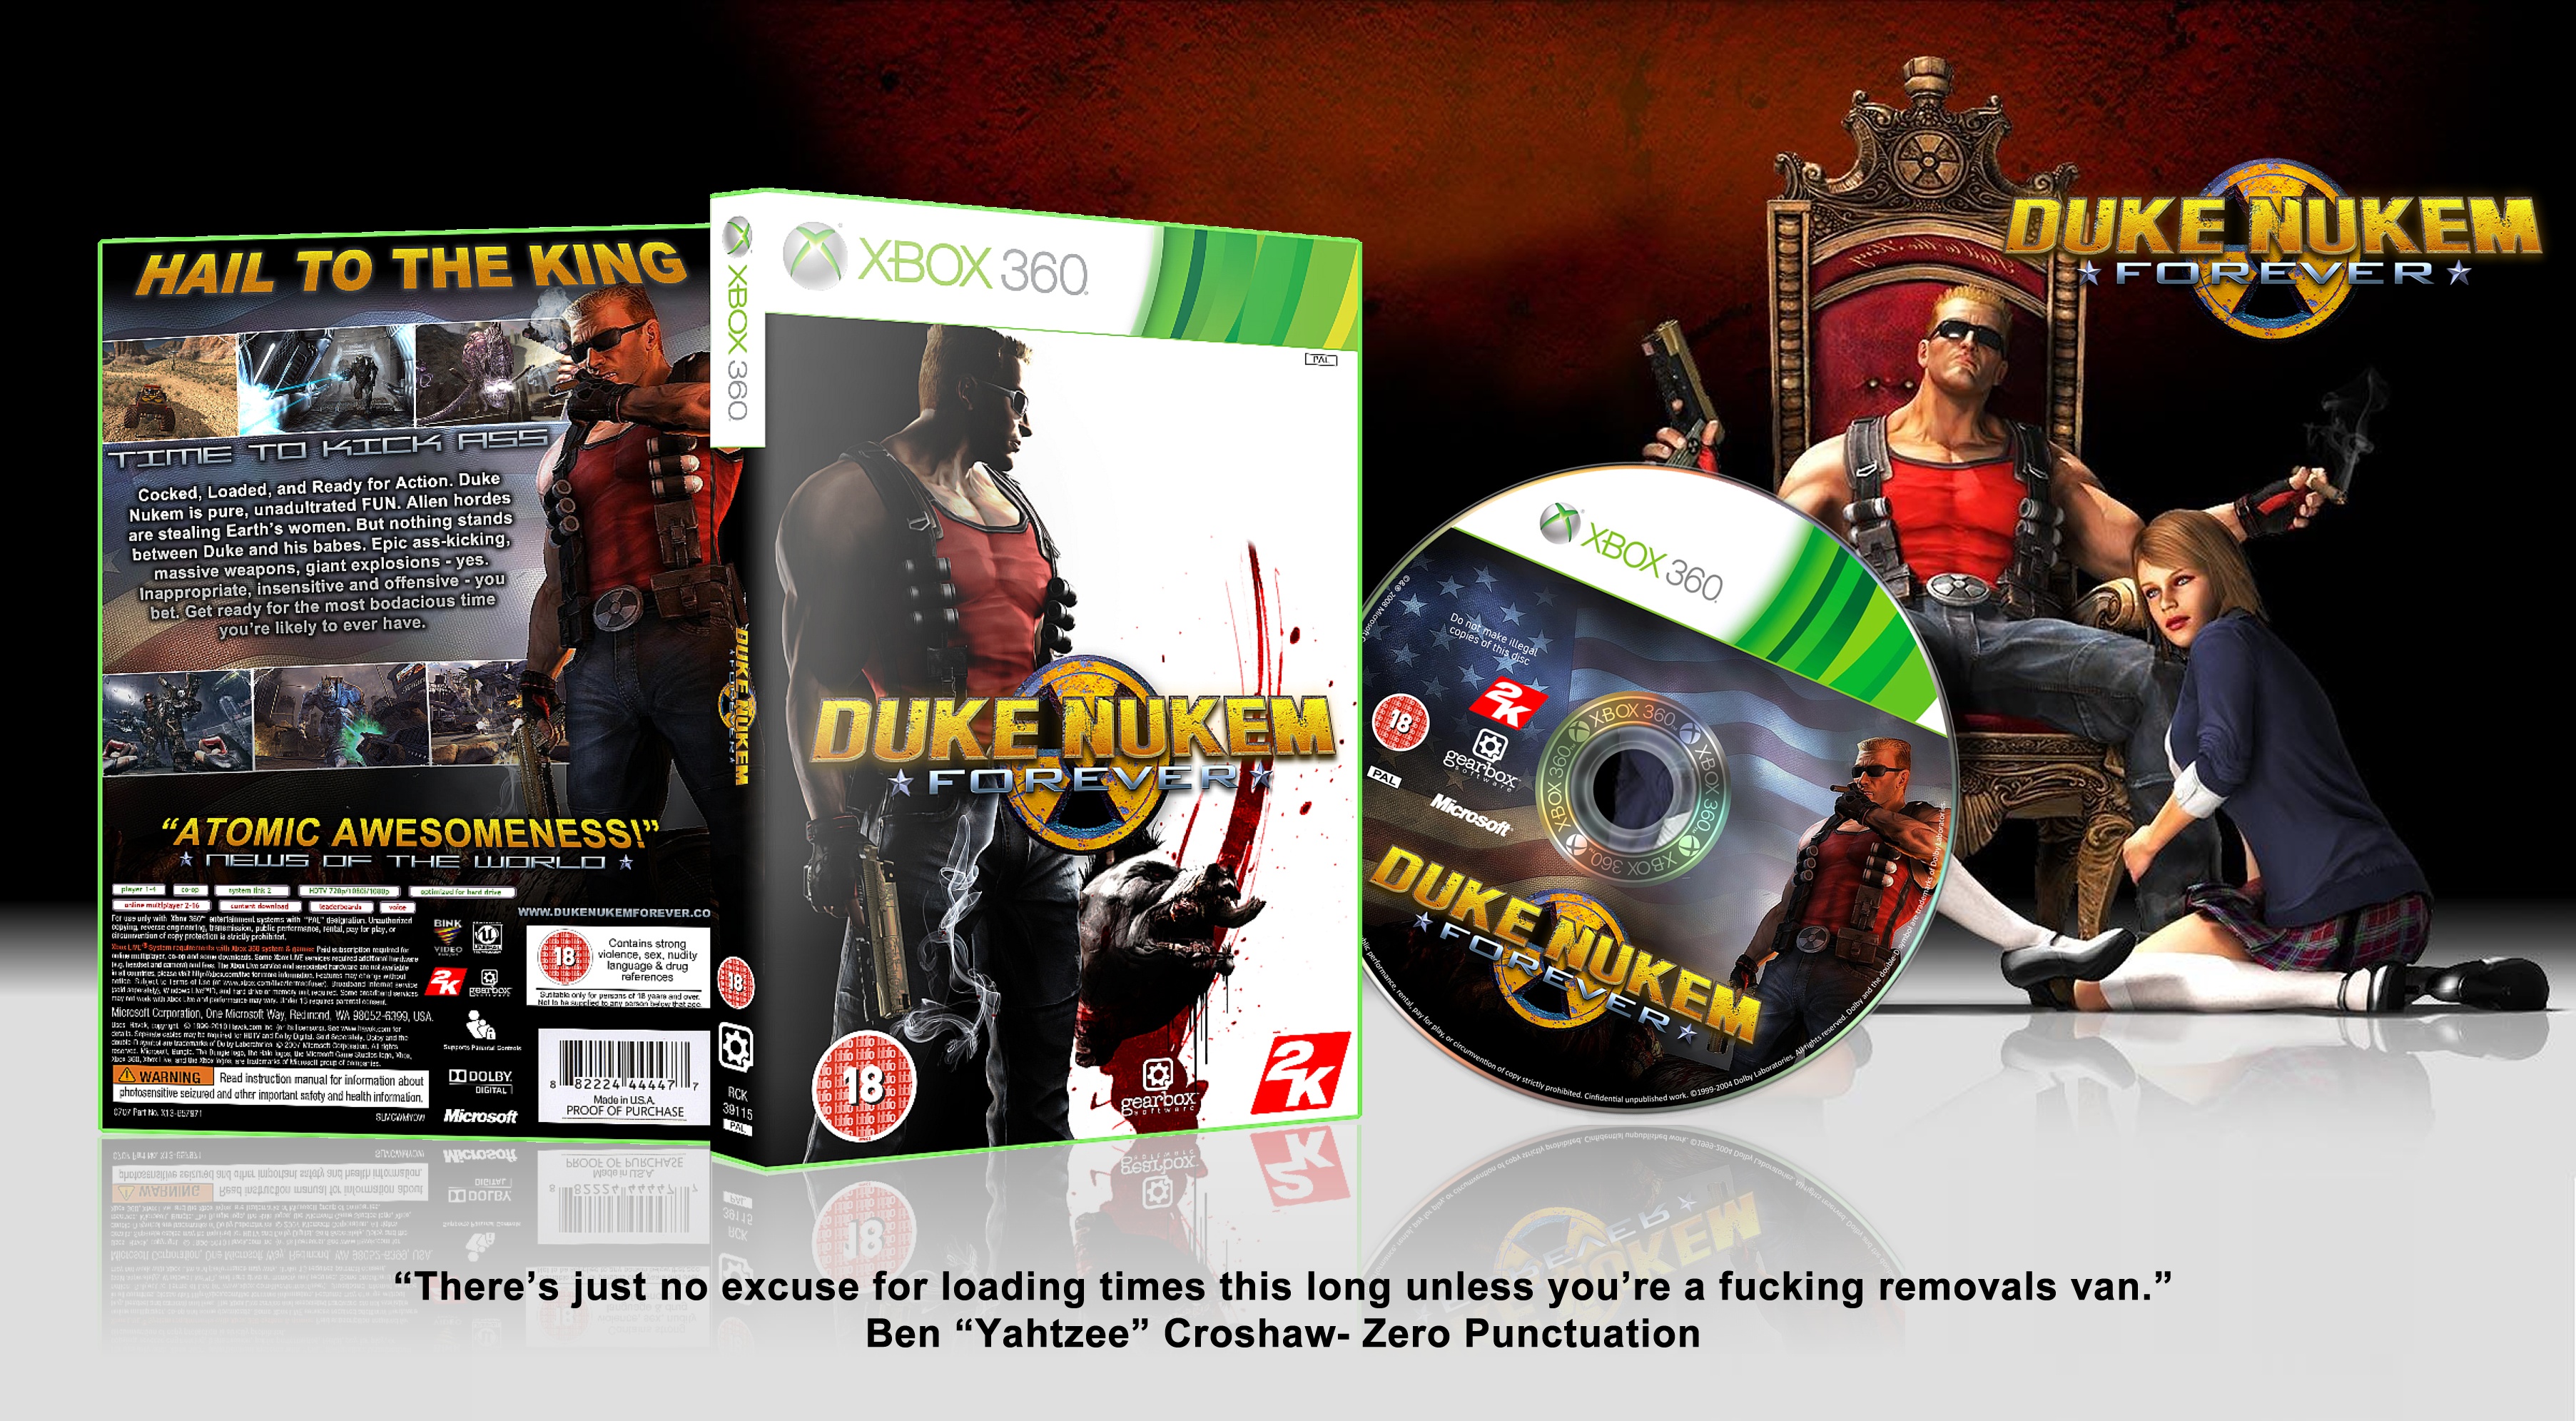 Duke Nukem Forever box cover